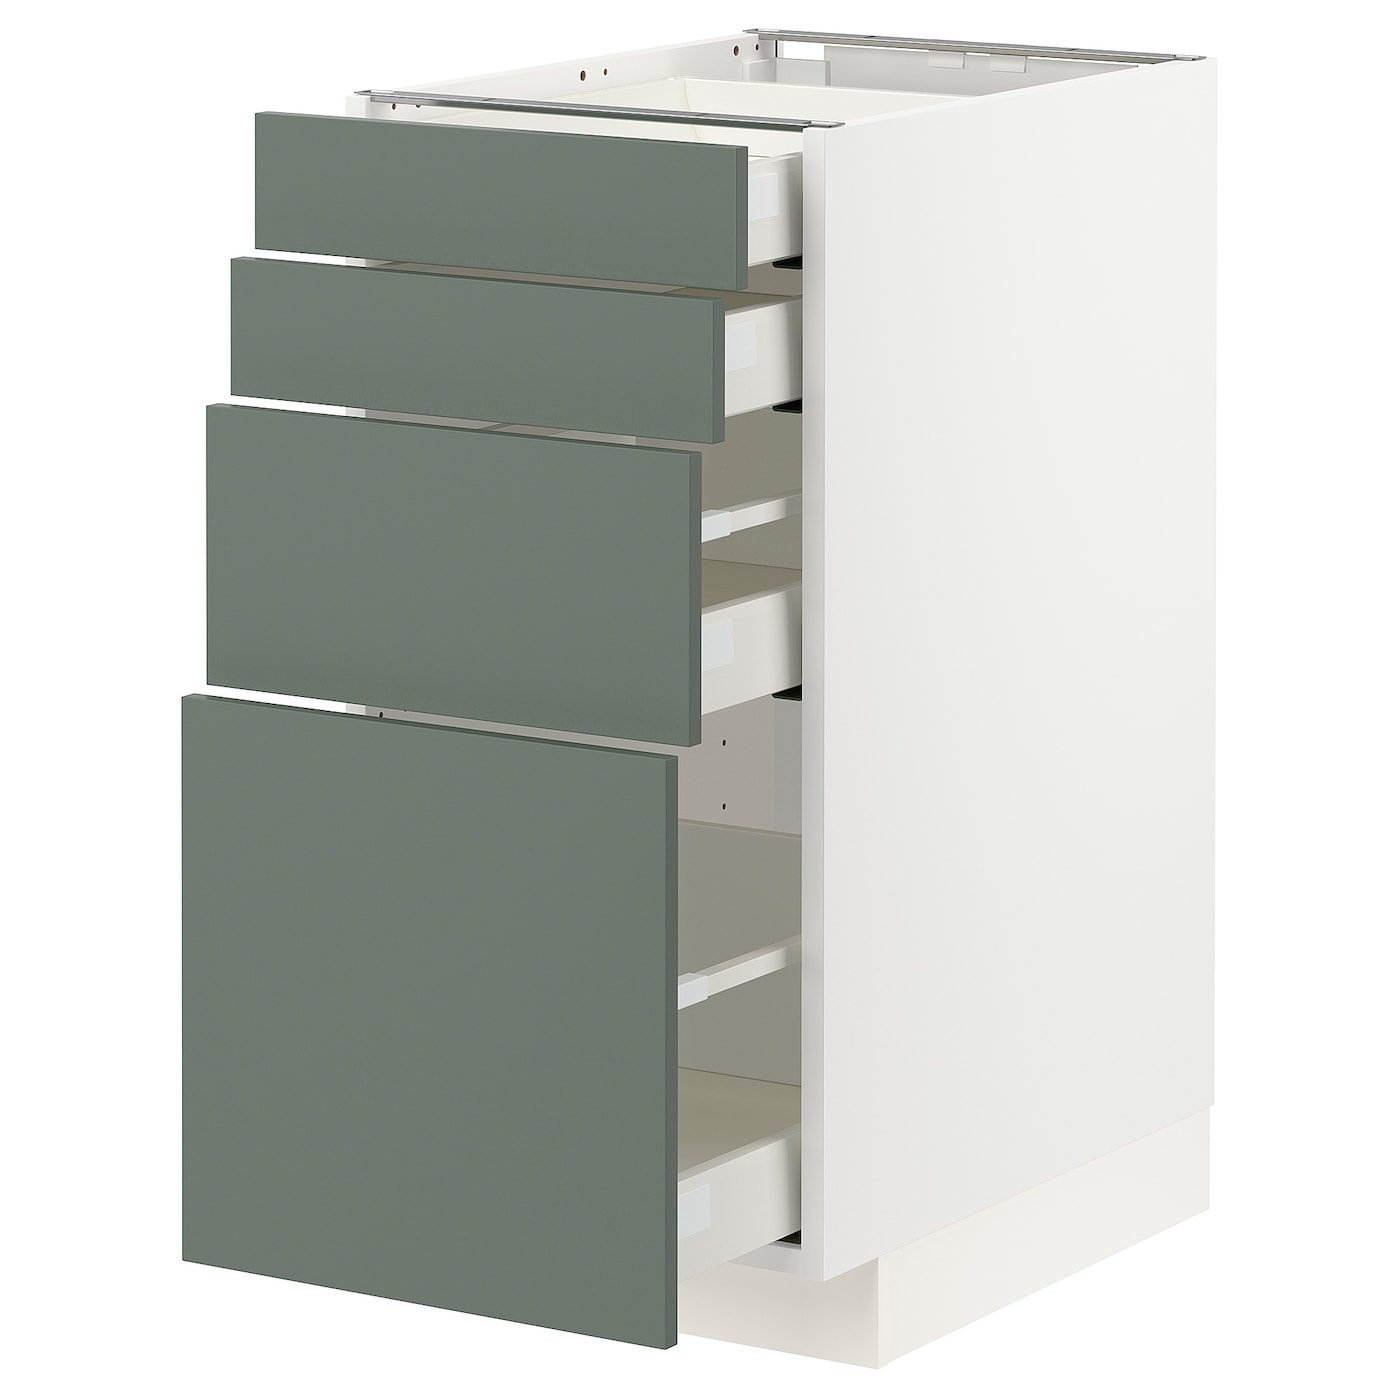 Напольный кухонный шкаф  - IKEA METOD MAXIMERA, 88x61,9x40см, белый/светло-серый, МЕТОД МАКСИМЕРА ИКЕА